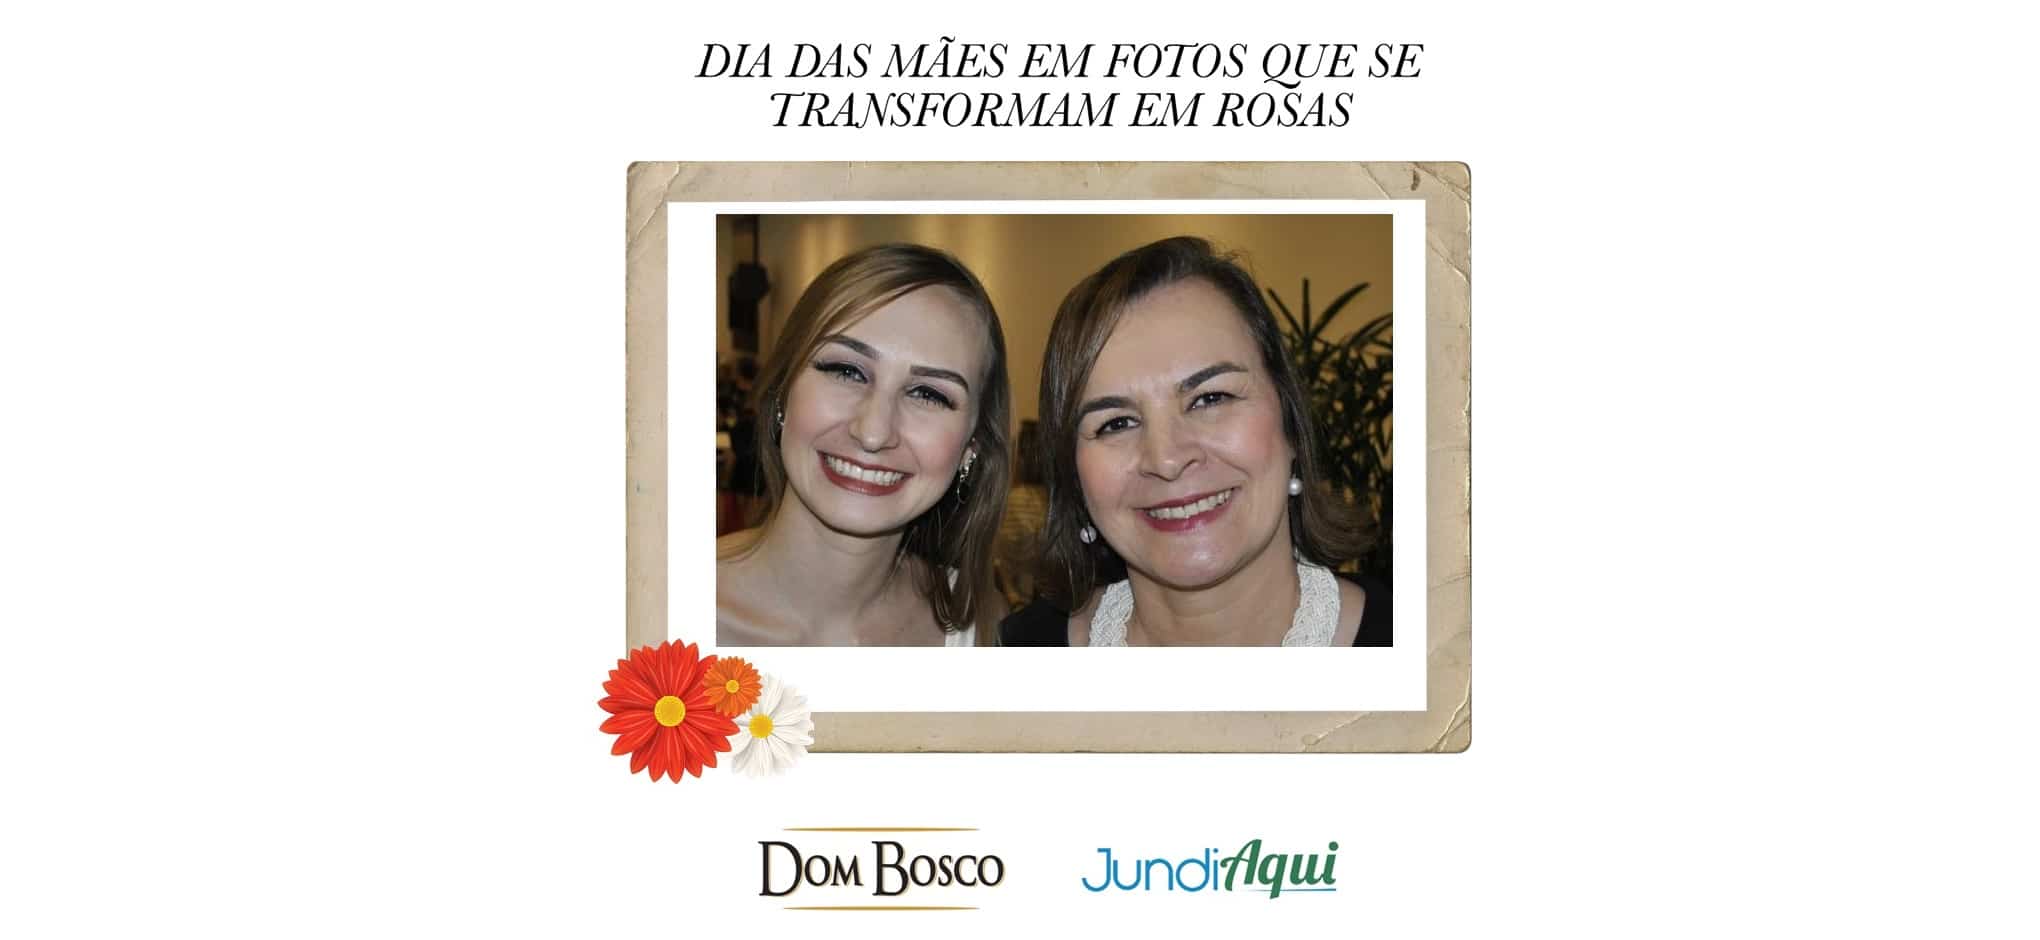  Vinho Dom Bosco e JundiAqui transformam foto em rosa no Dia das Mães